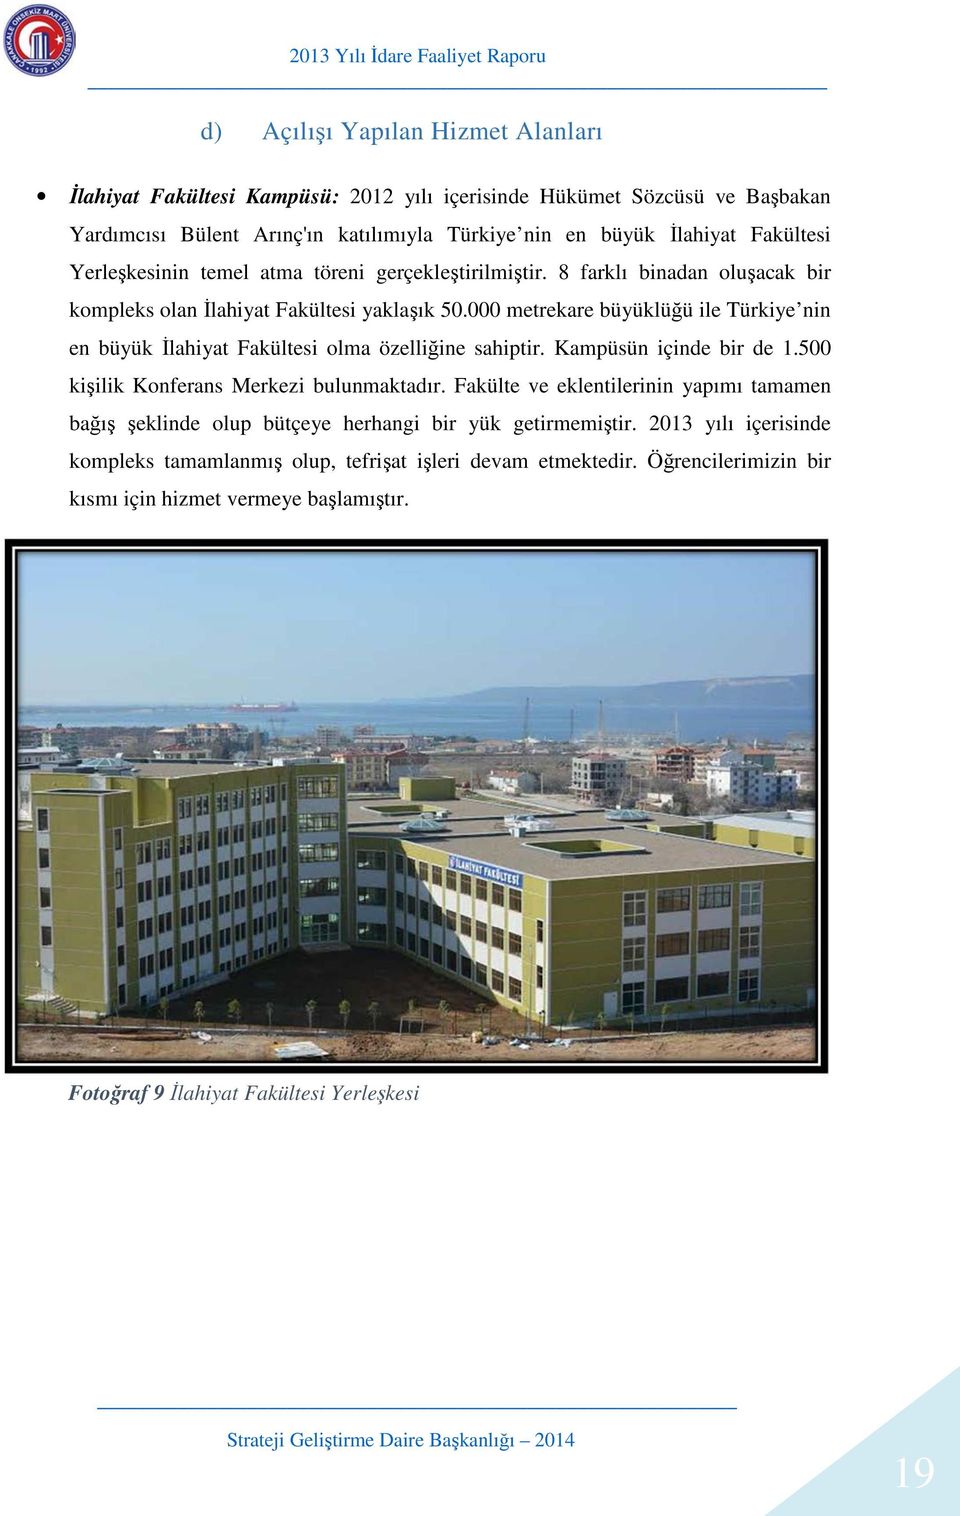 000 metrekare büyüklüğü ile Türkiye nin en büyük İlahiyat Fakültesi olma özelliğine sahiptir. Kampüsün içinde bir de 1.500 kişilik Konferans Merkezi bulunmaktadır.